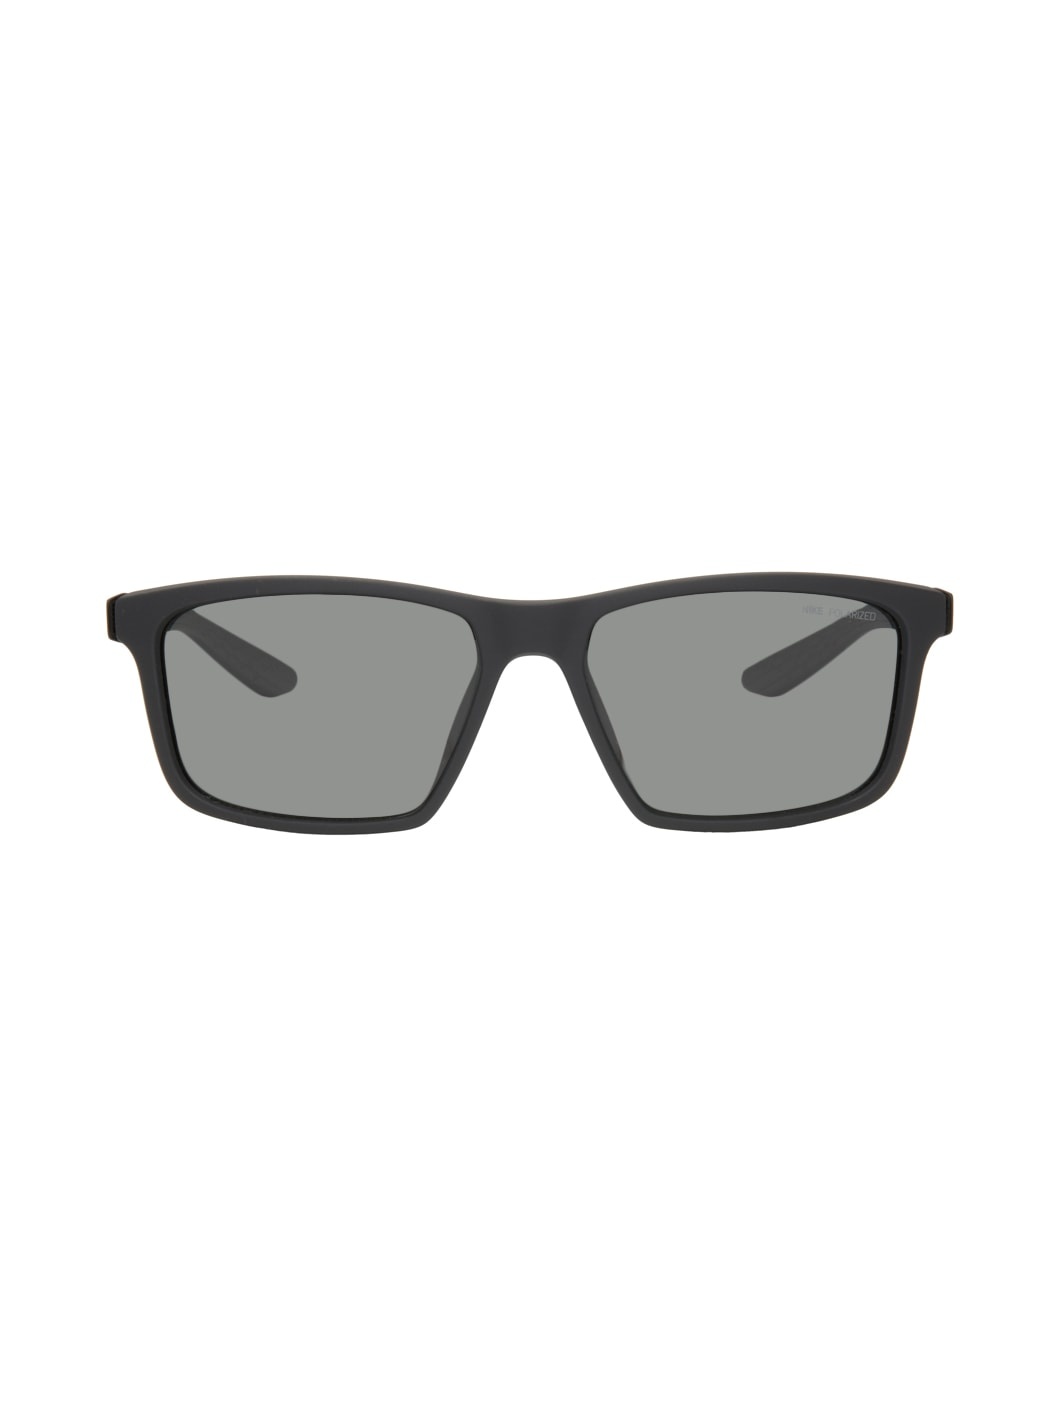 Black Valiant Sunglasses - 1